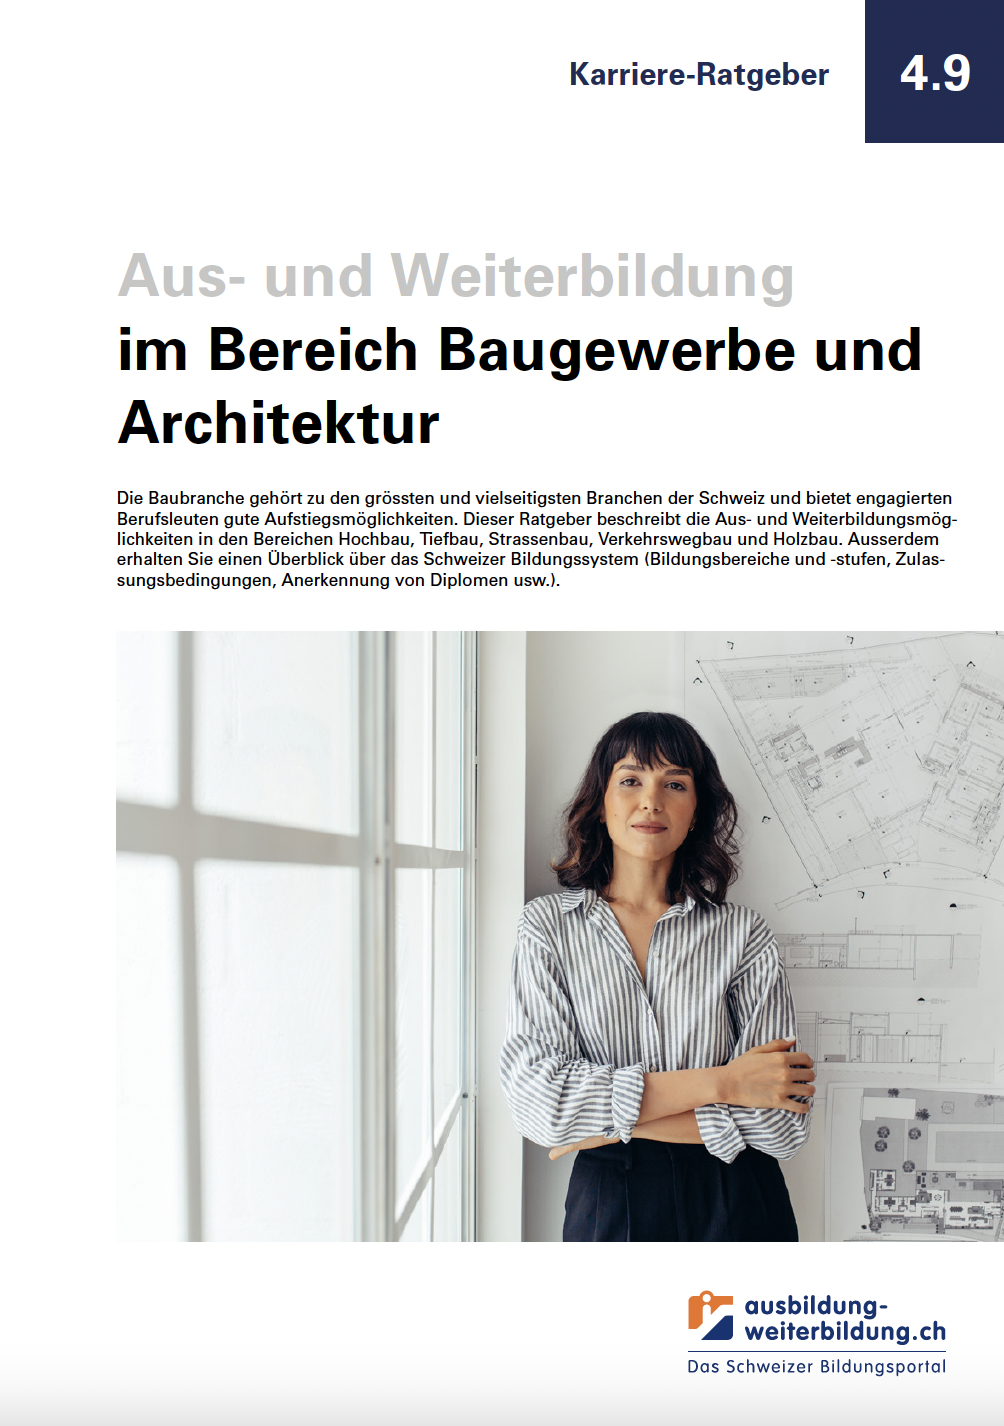 Ratgeber Baugewerbe und Architektur